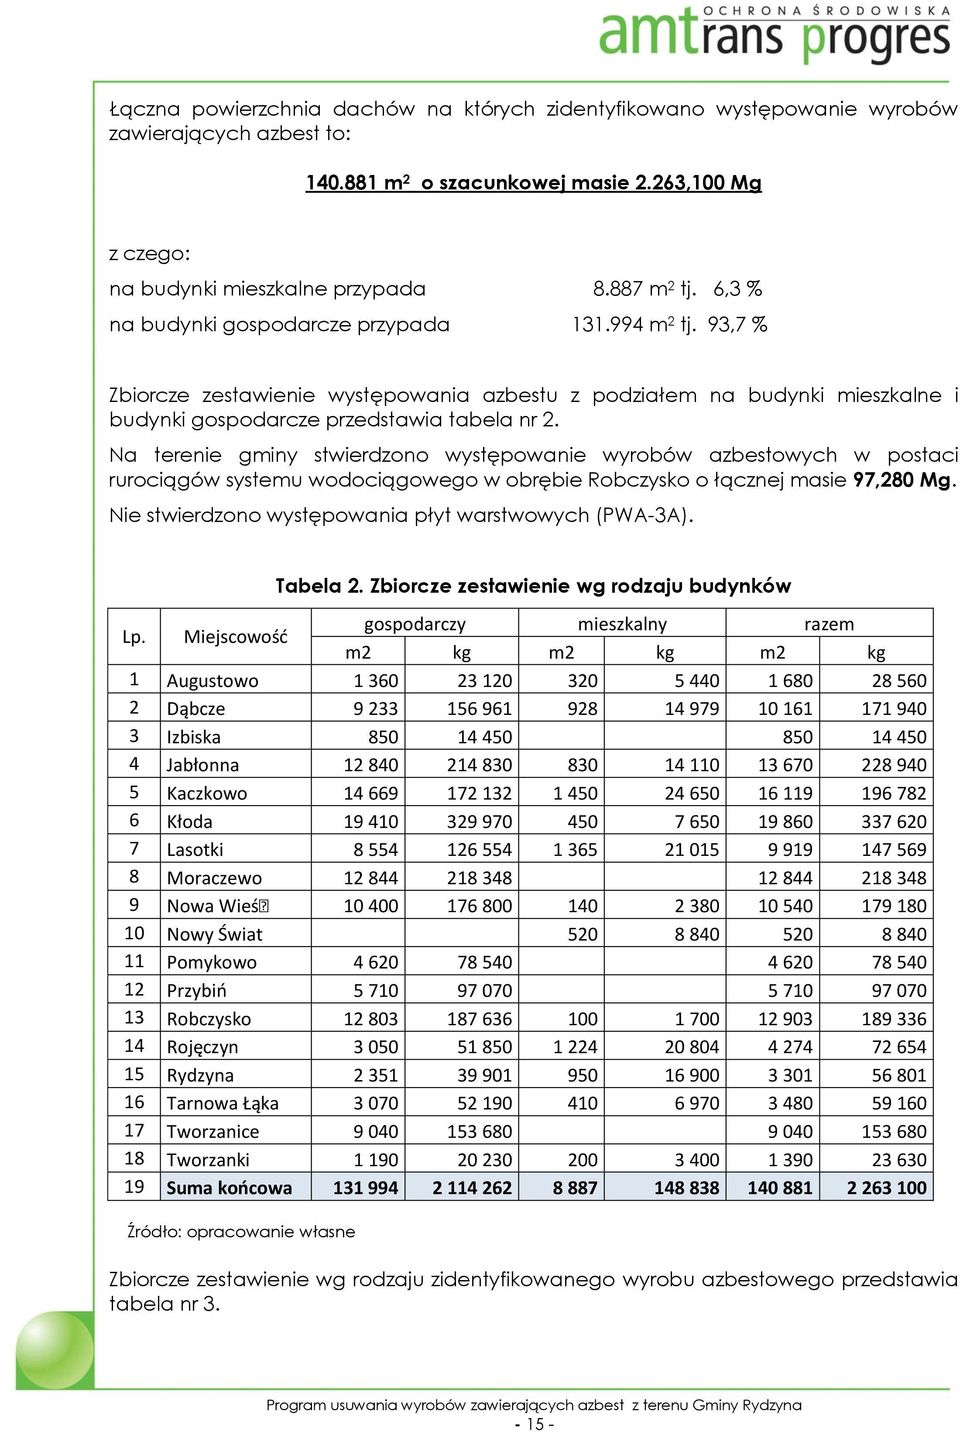 Na terenie gminy stwierdzono występowanie wyrobów azbestowych w postaci rurociągów systemu wodociągowego w obrębie Robczysko o łącznej masie 97,280 Mg.